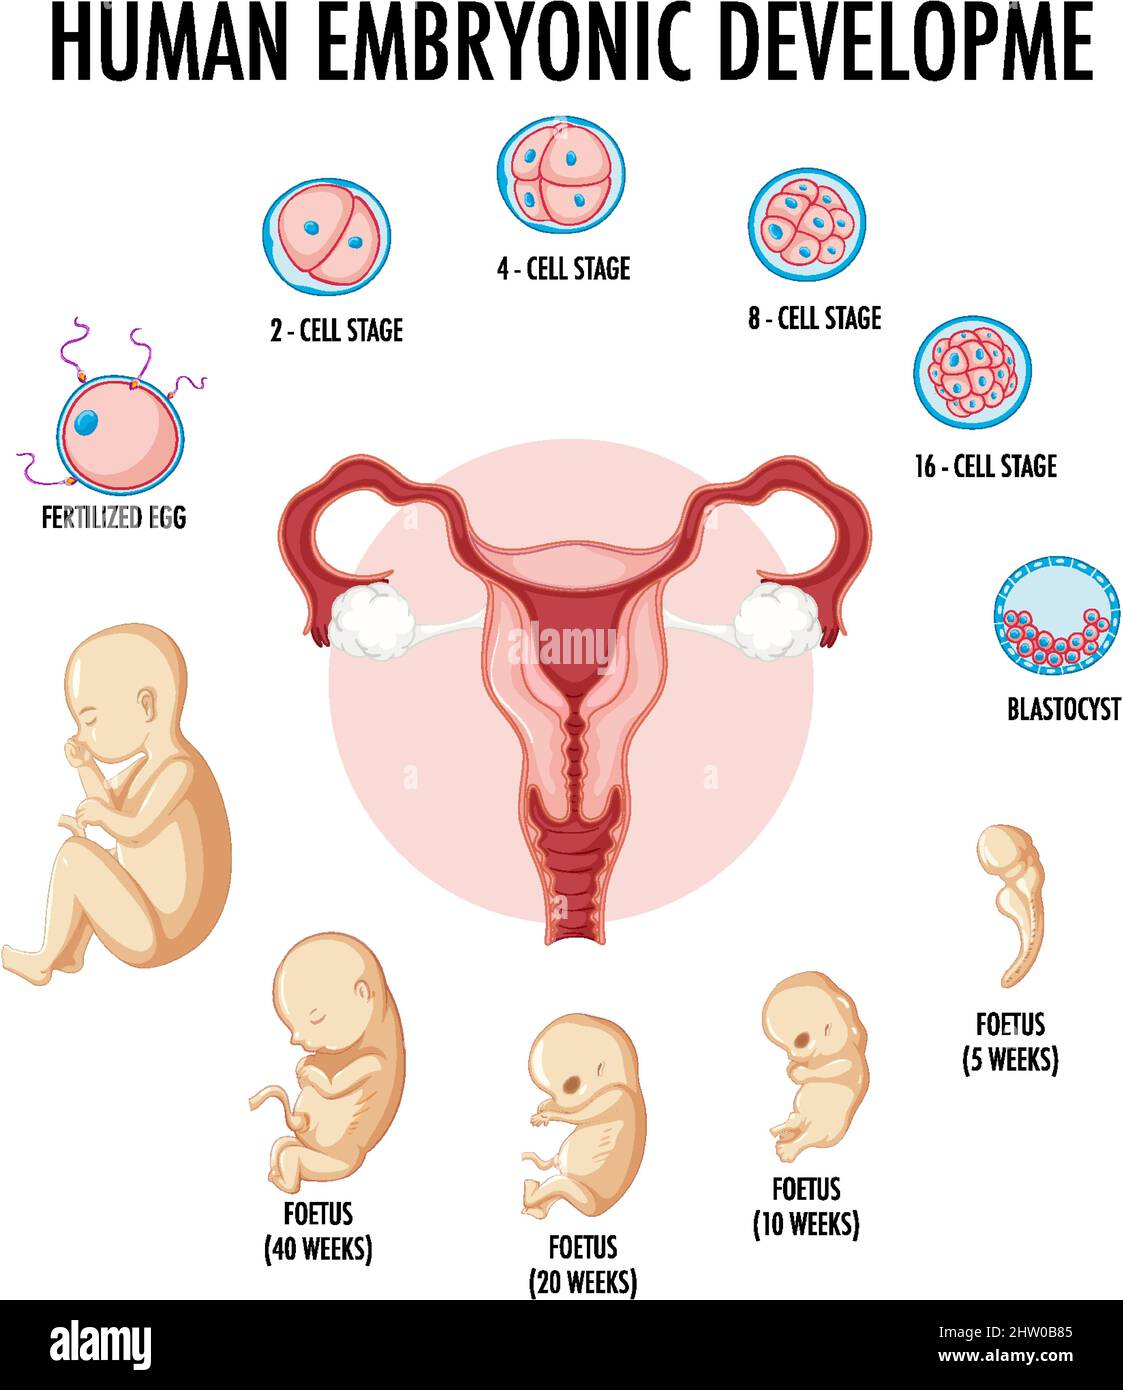 Desarrollo Embrionario Humano En Ilustración Infográfica Humana Imagen Vector De Stock Alamy 3474